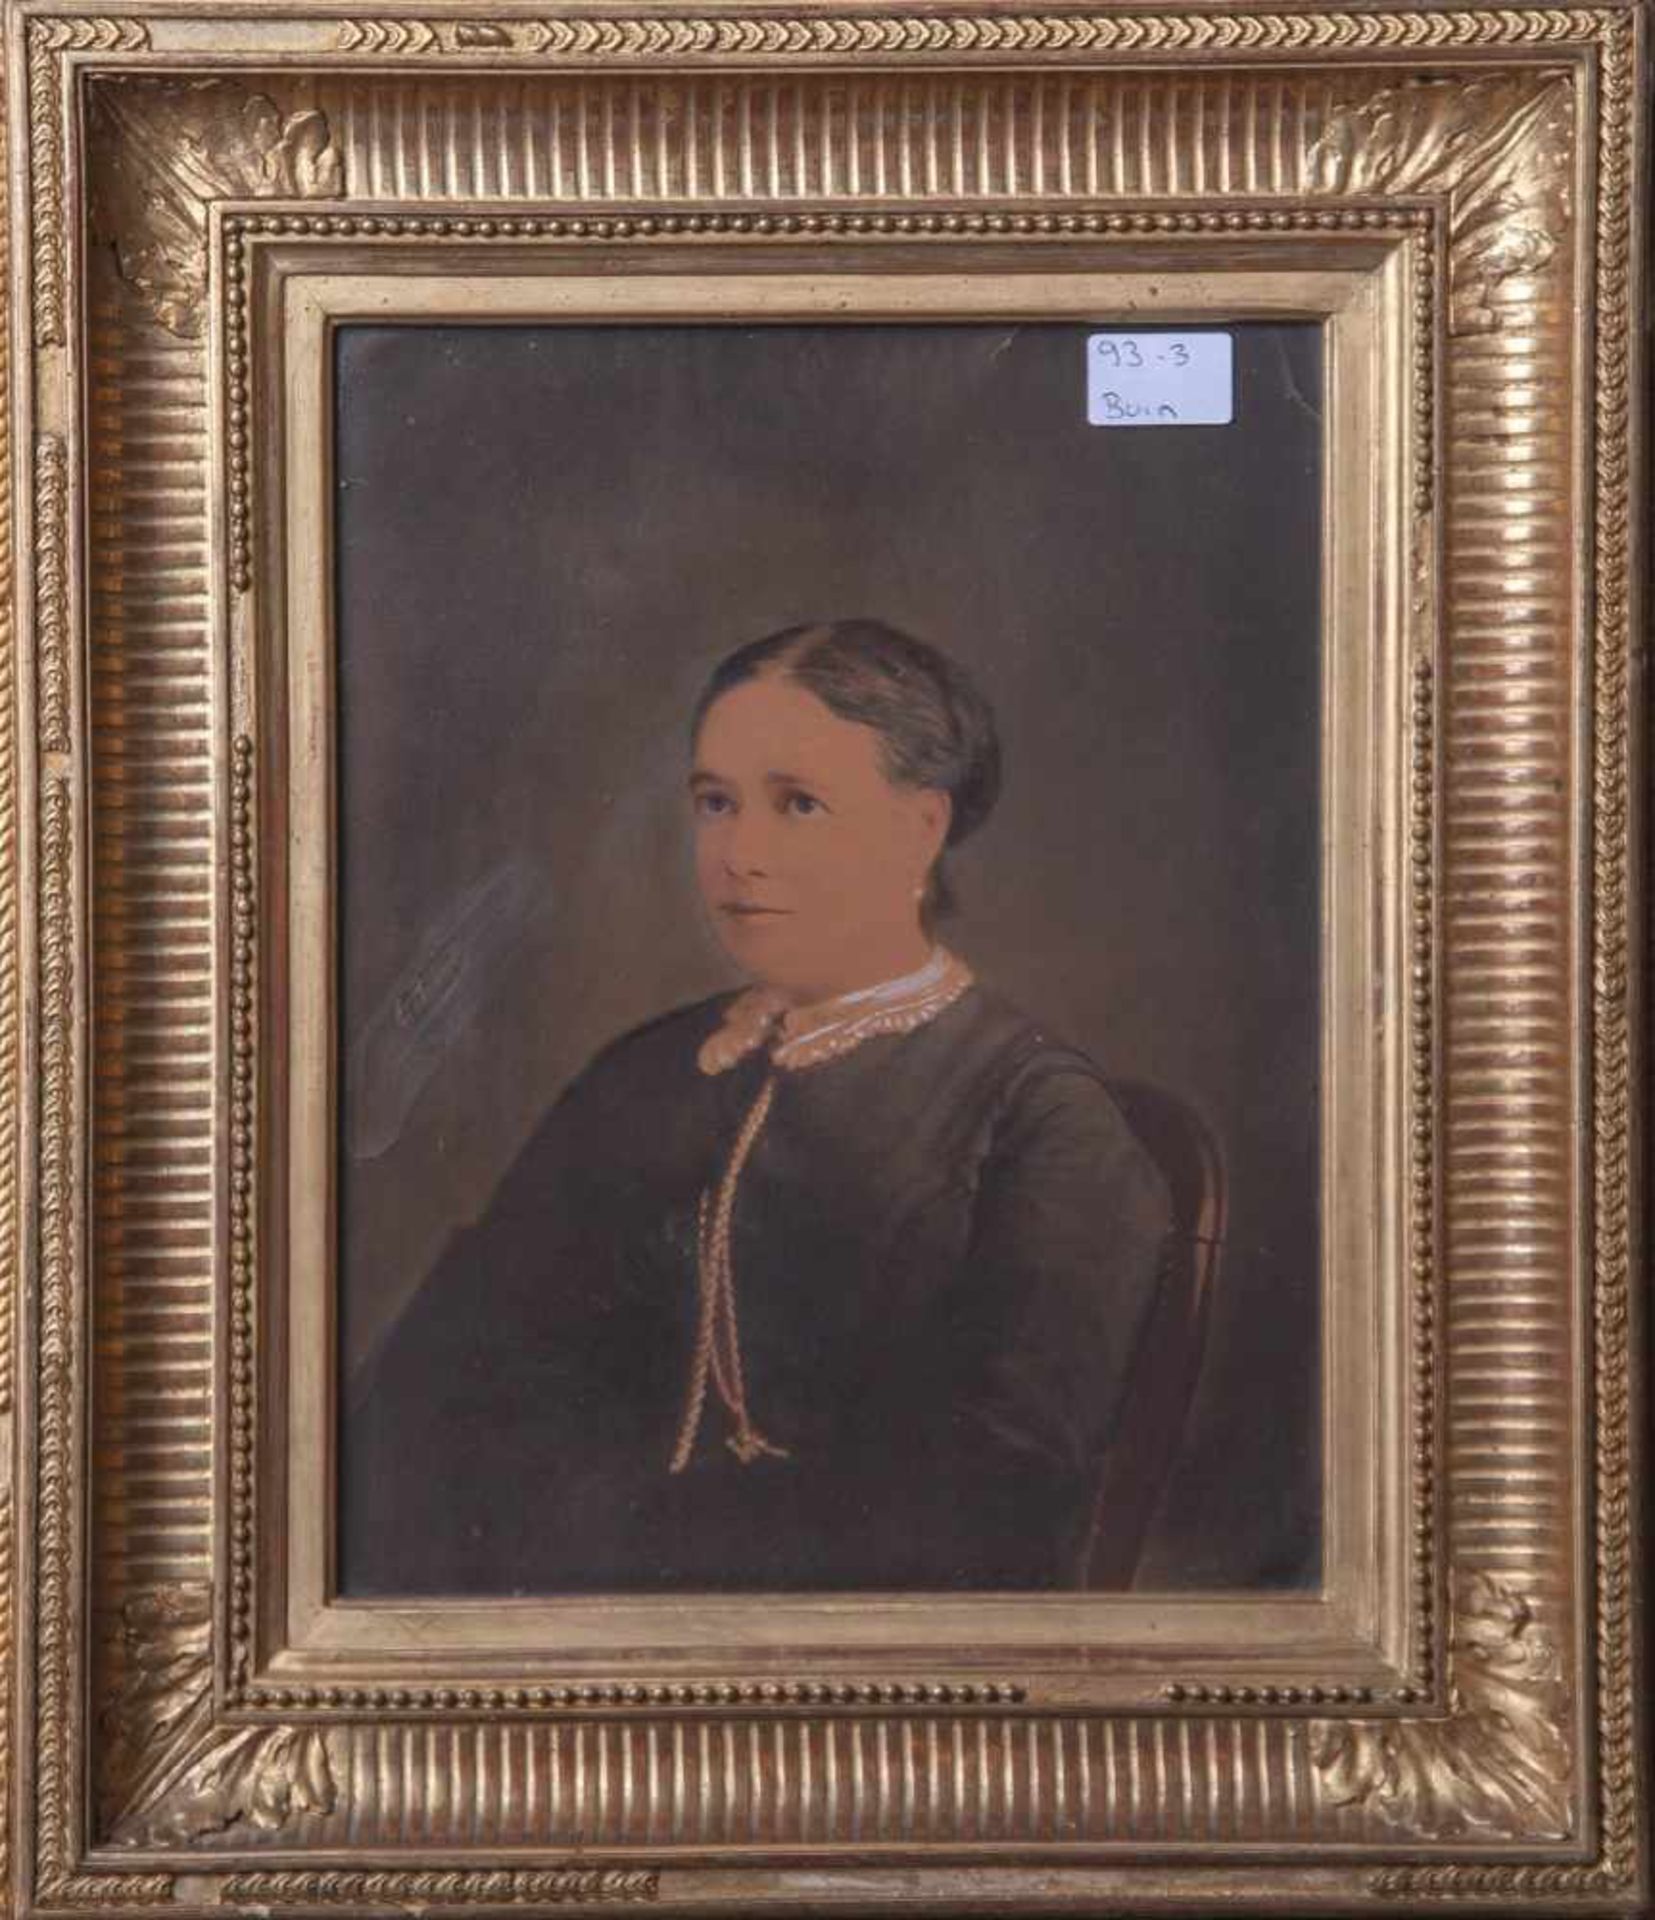 Robert, E., Portrait einer Dame, Zeichnung, sign. mi. li., ca. 26 x 20 cm, hinter Glasgerahmt (